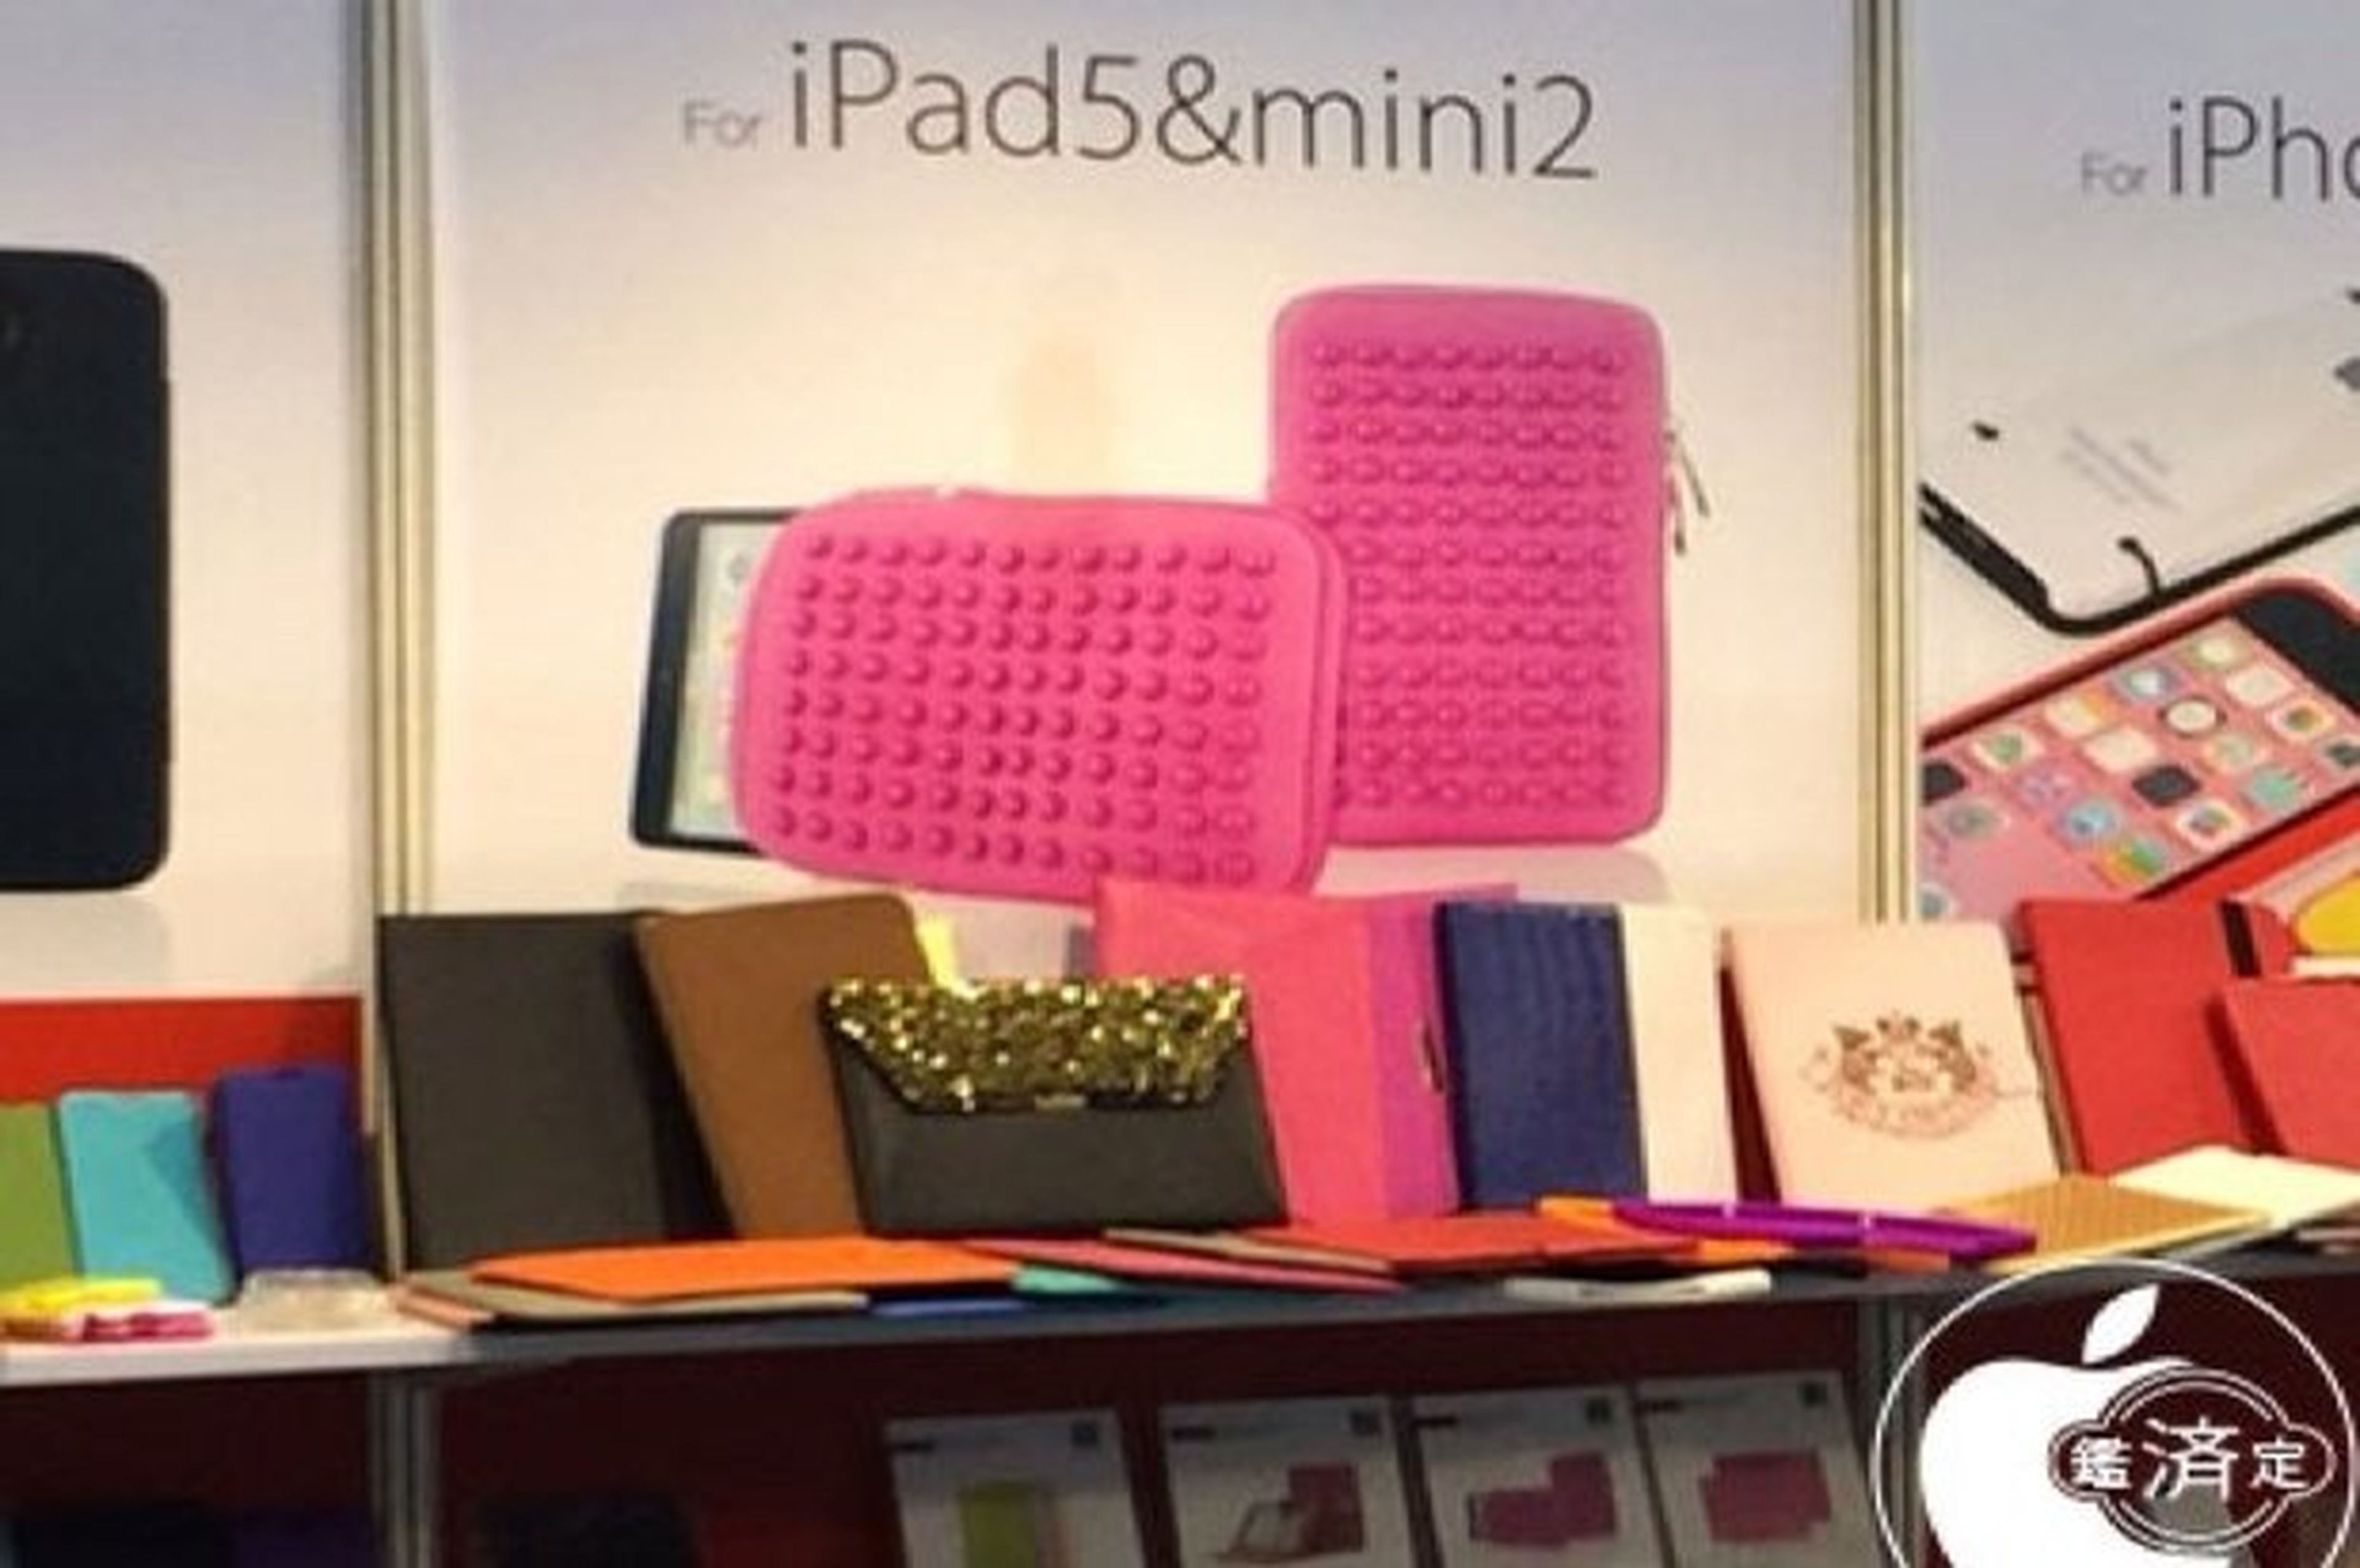 Blog japonés asegura iPad mini 2 será más gorda que la original